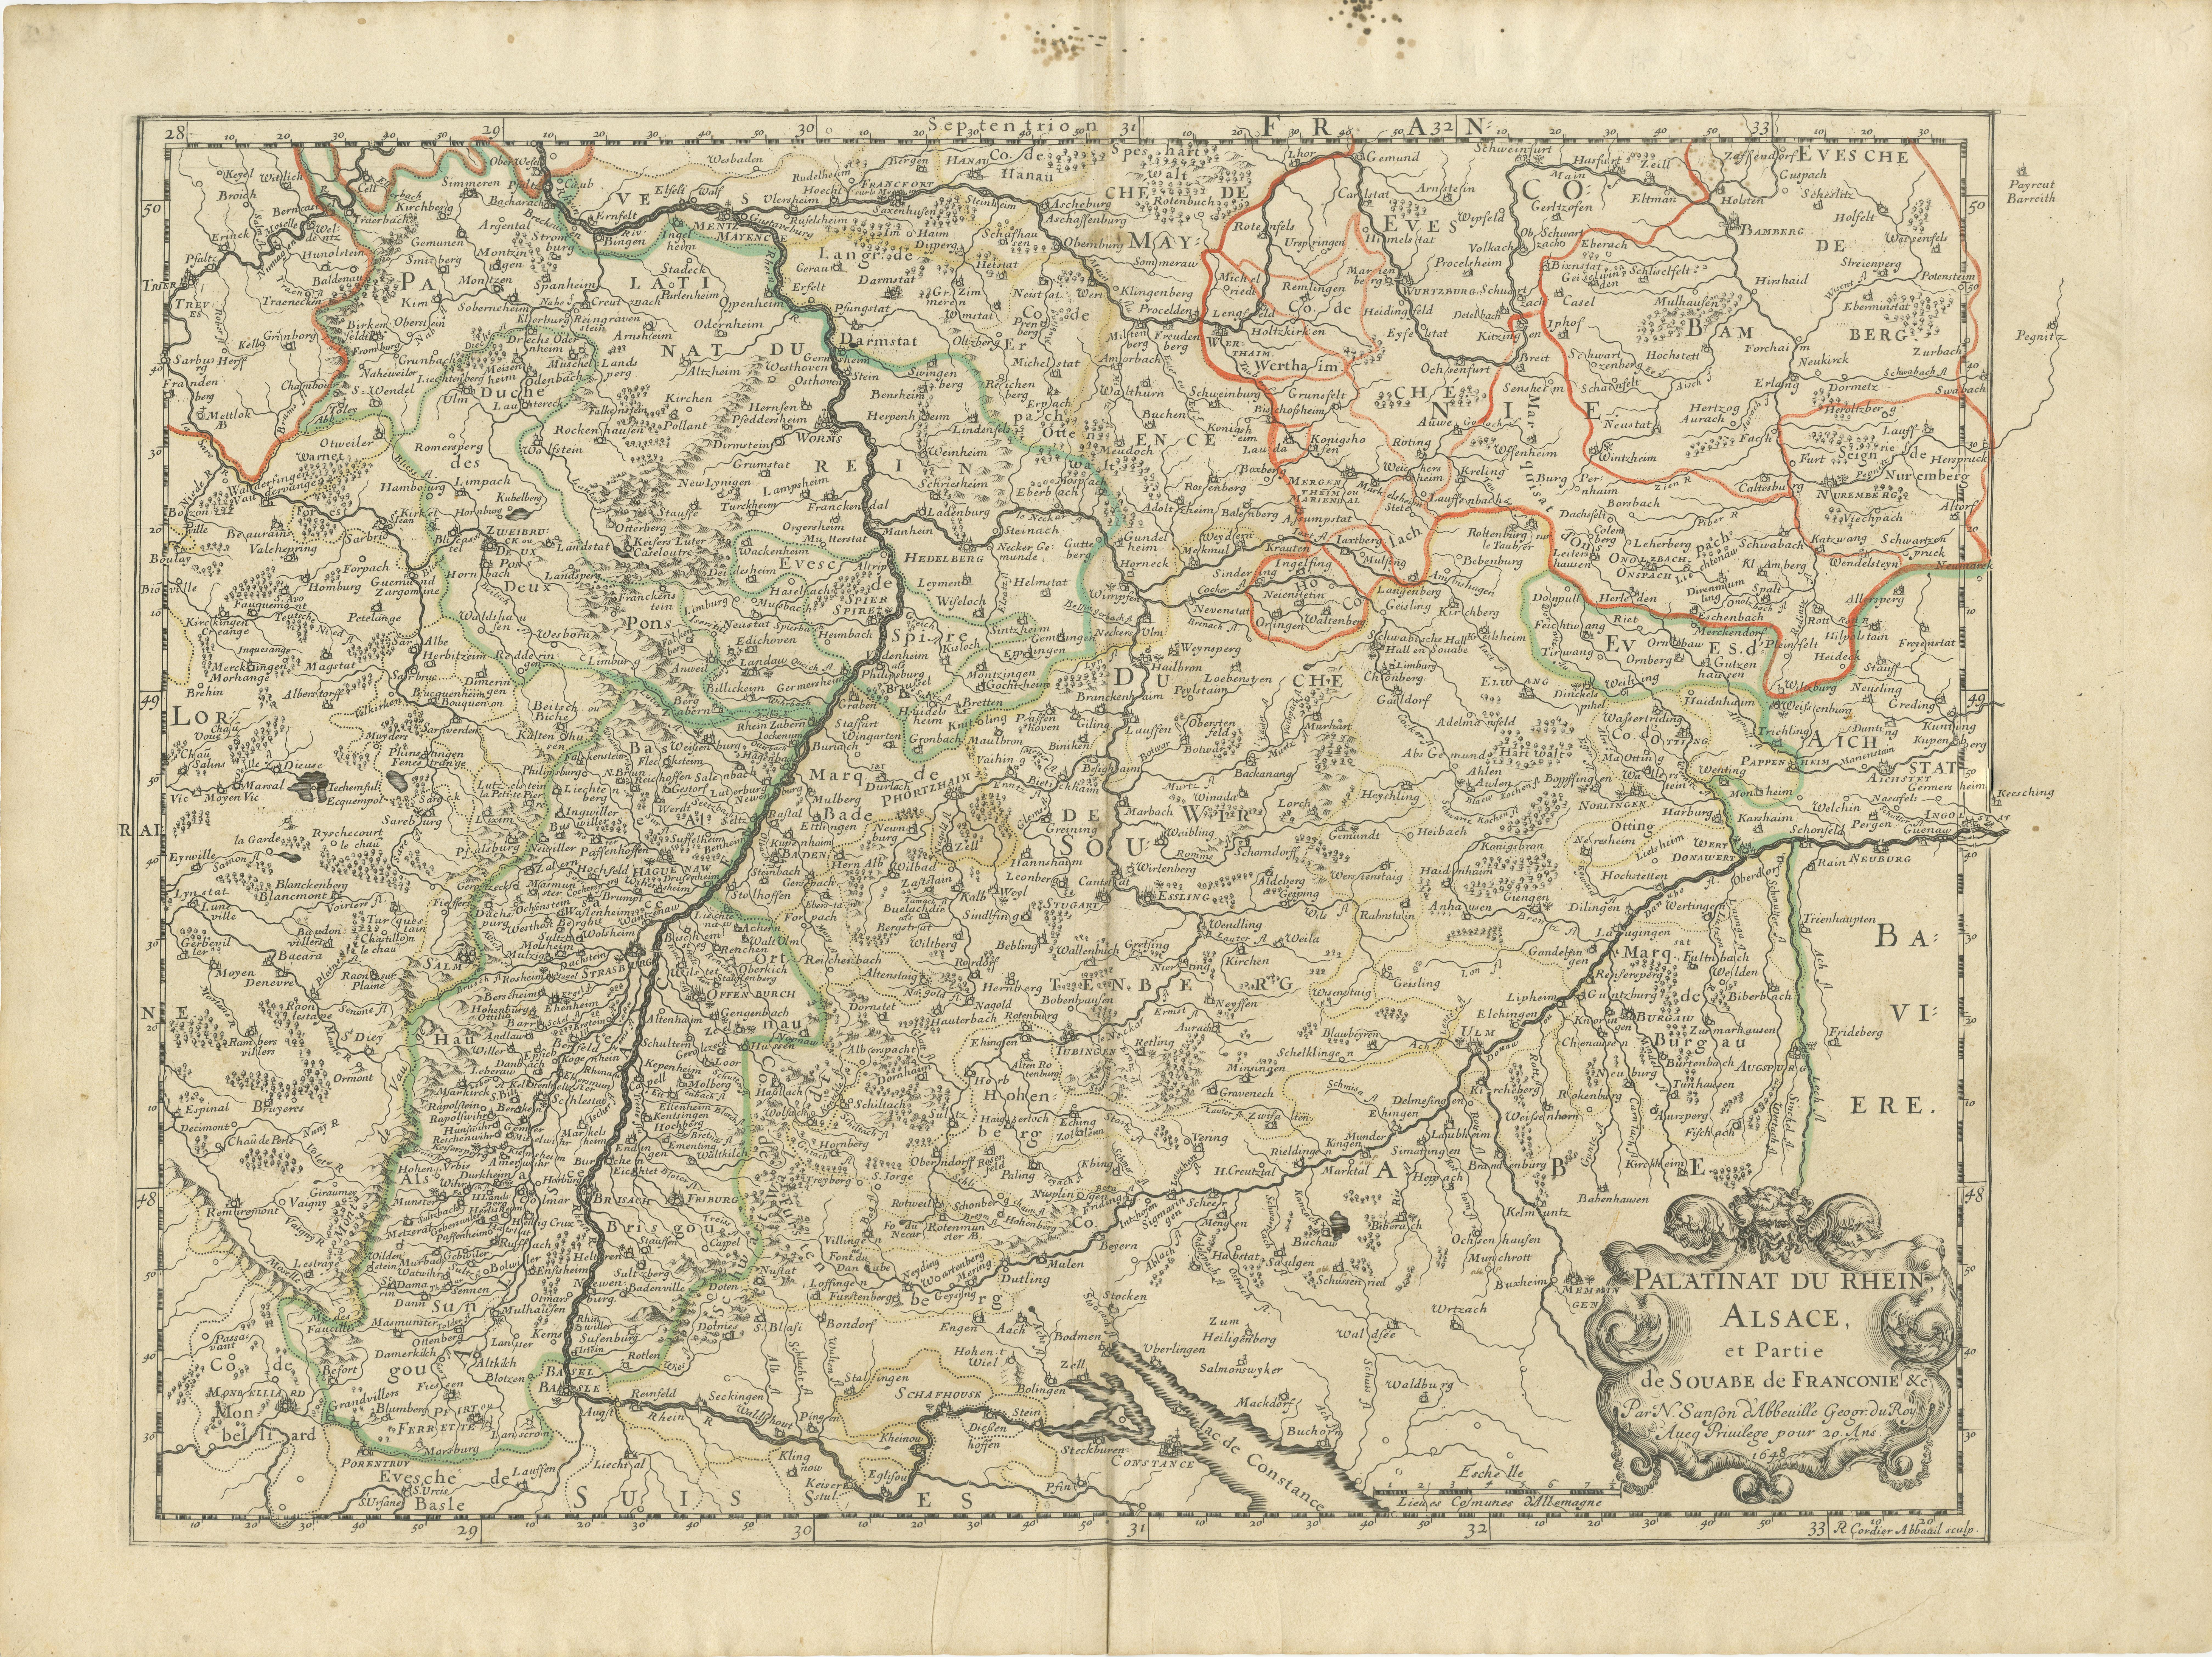 Antique map titled 'Palitinat du Rhein, Alsace, et partie de Souabe de Franconie (..)'. Double-page engraved map of the Rhineland and Alsace with original/contemporary hand coloring. Published by N. Sanson, circa 1648.

Nicolas Sanson (1600-1667)